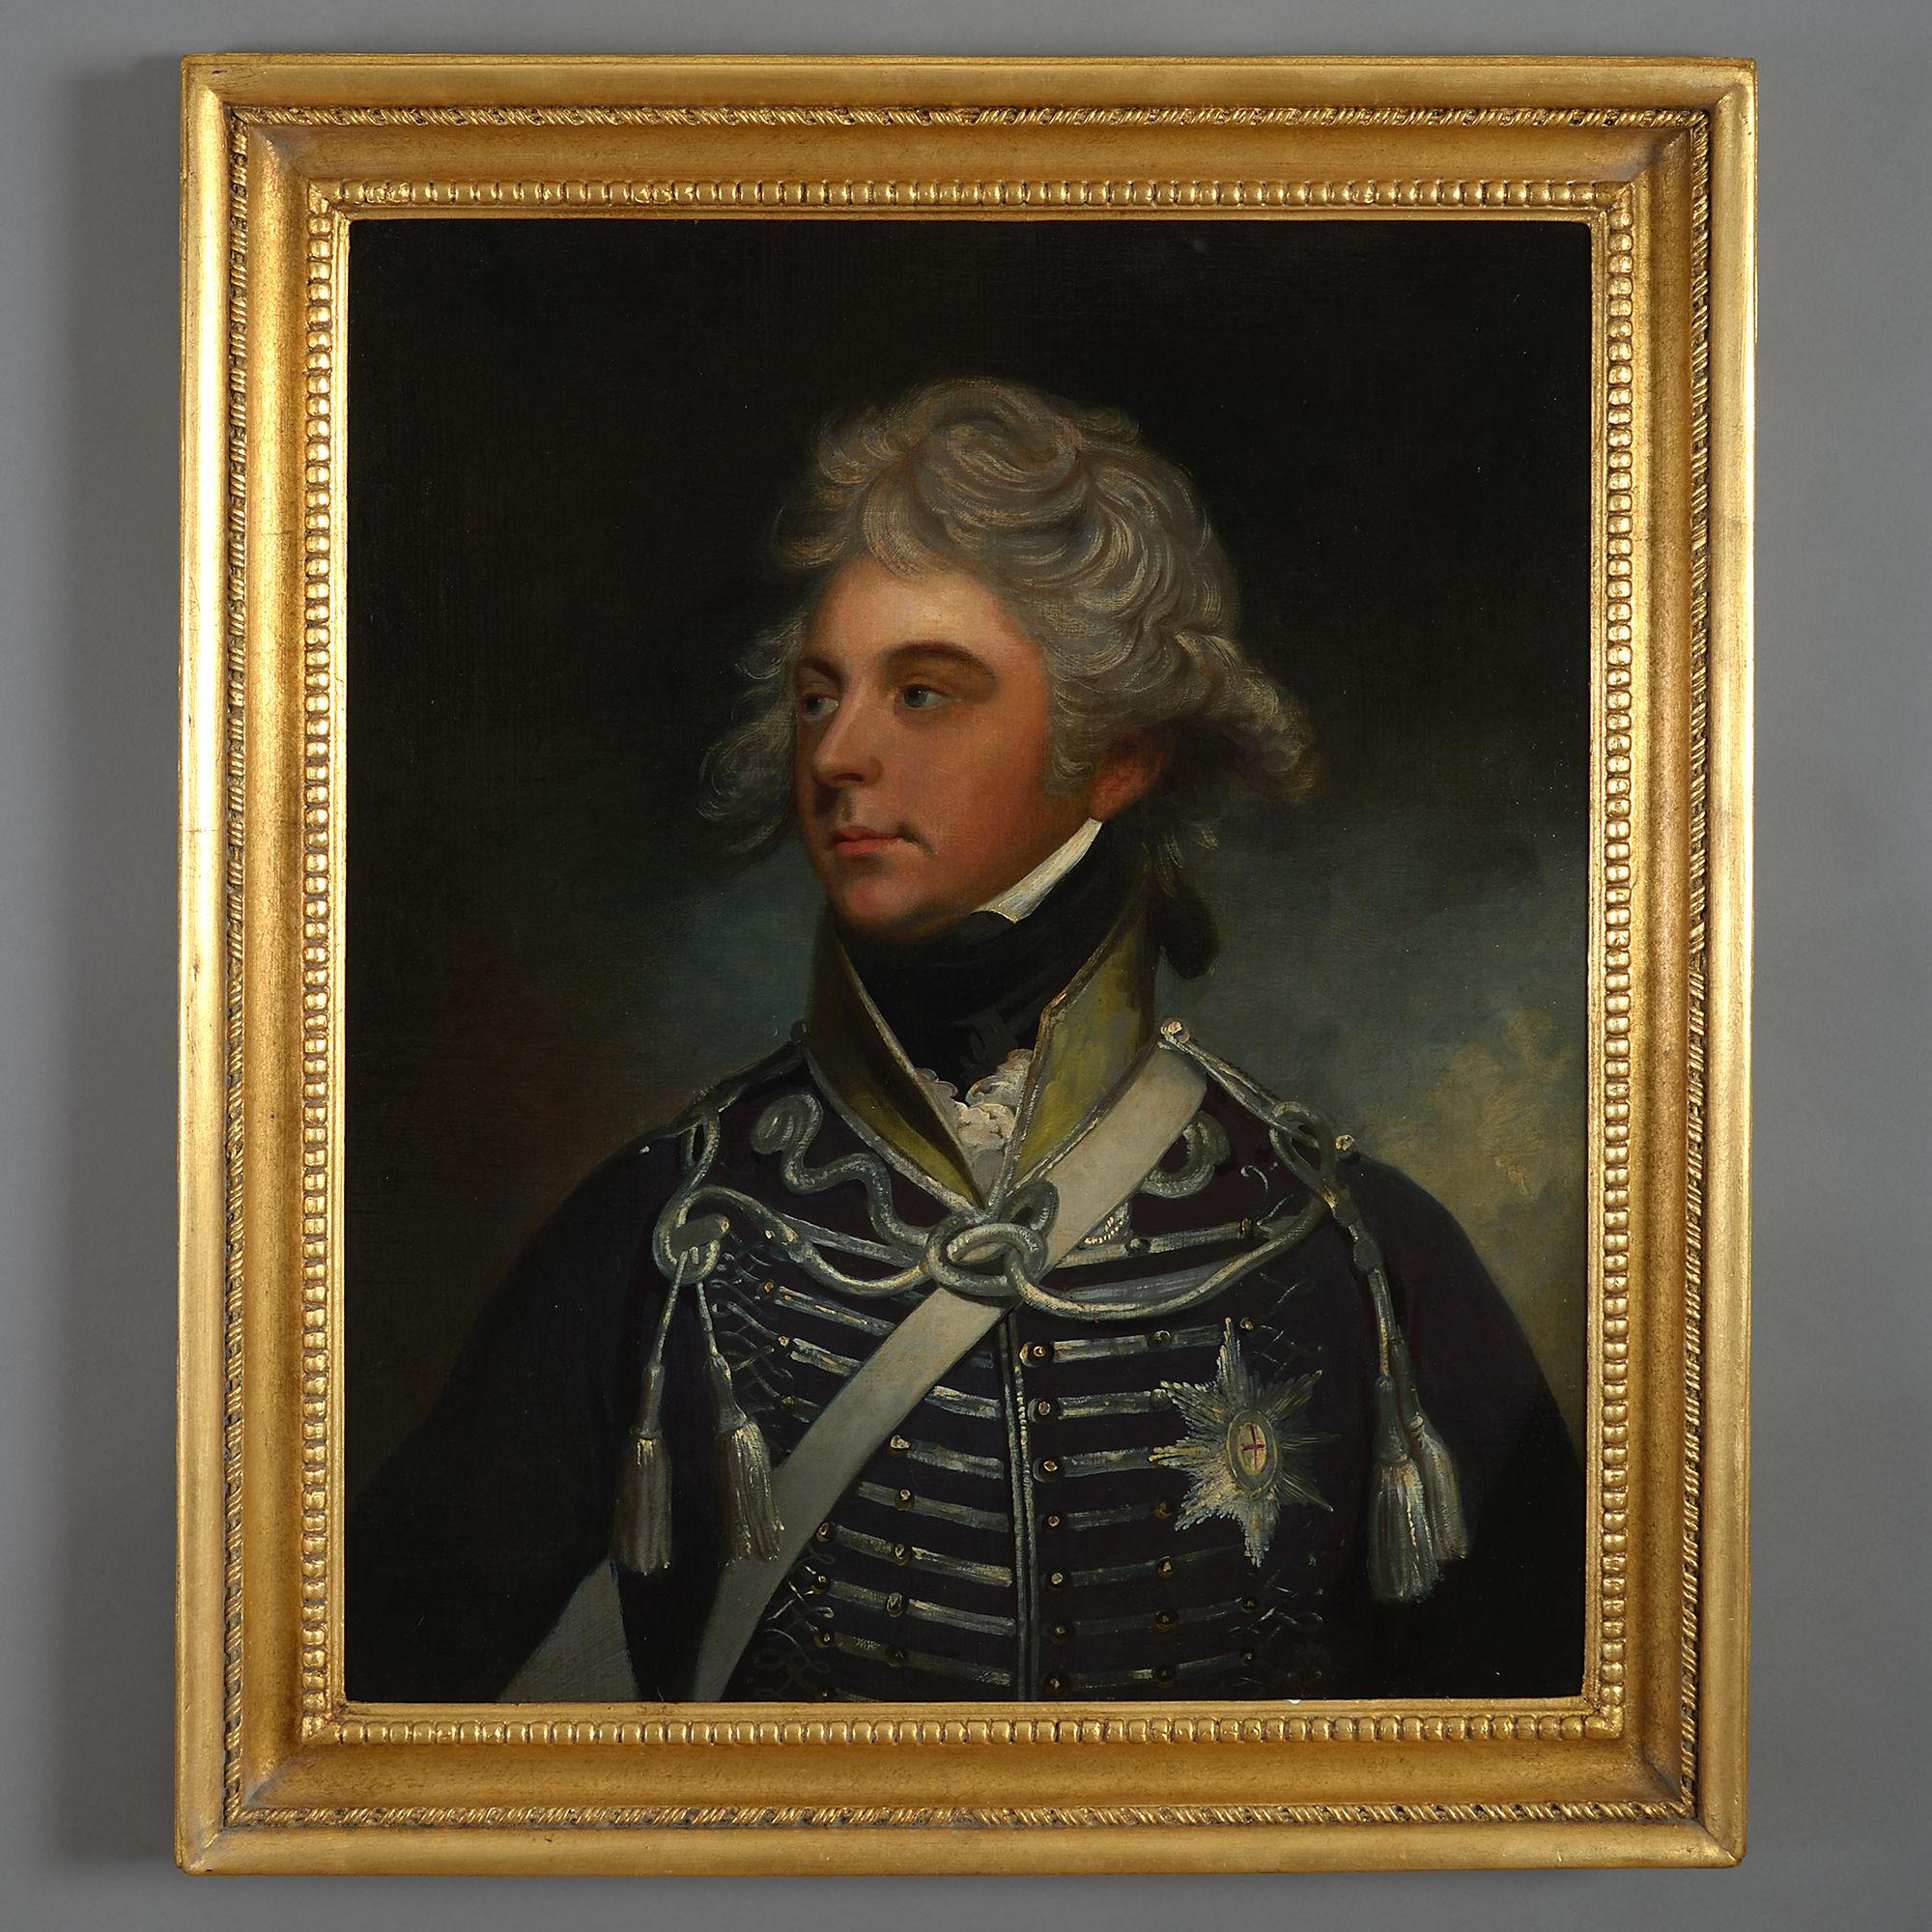 Unknown Portrait Painting – Porträt von König Georg IV. als Prinz von Wales aus dem frühen 19. Jahrhundert